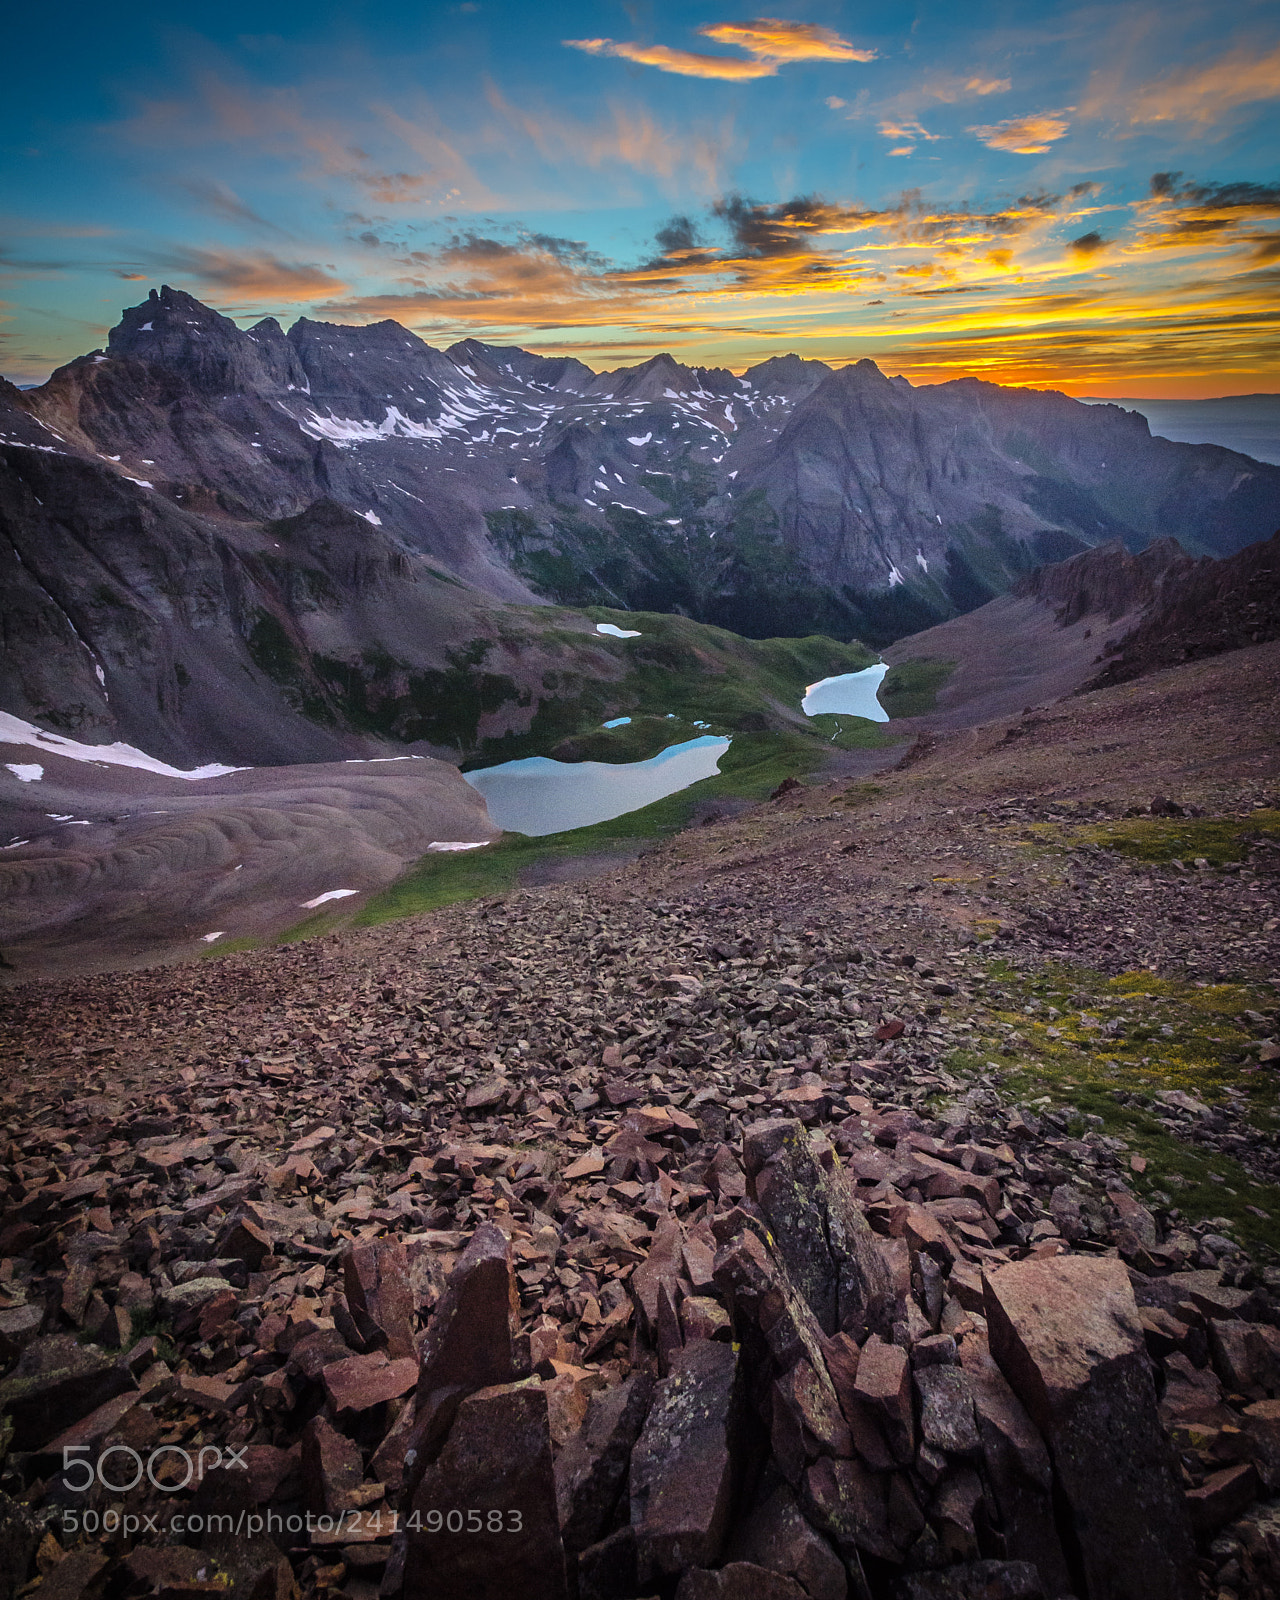 Nikon D7000 sample photo. An alpine sunset paradise photography